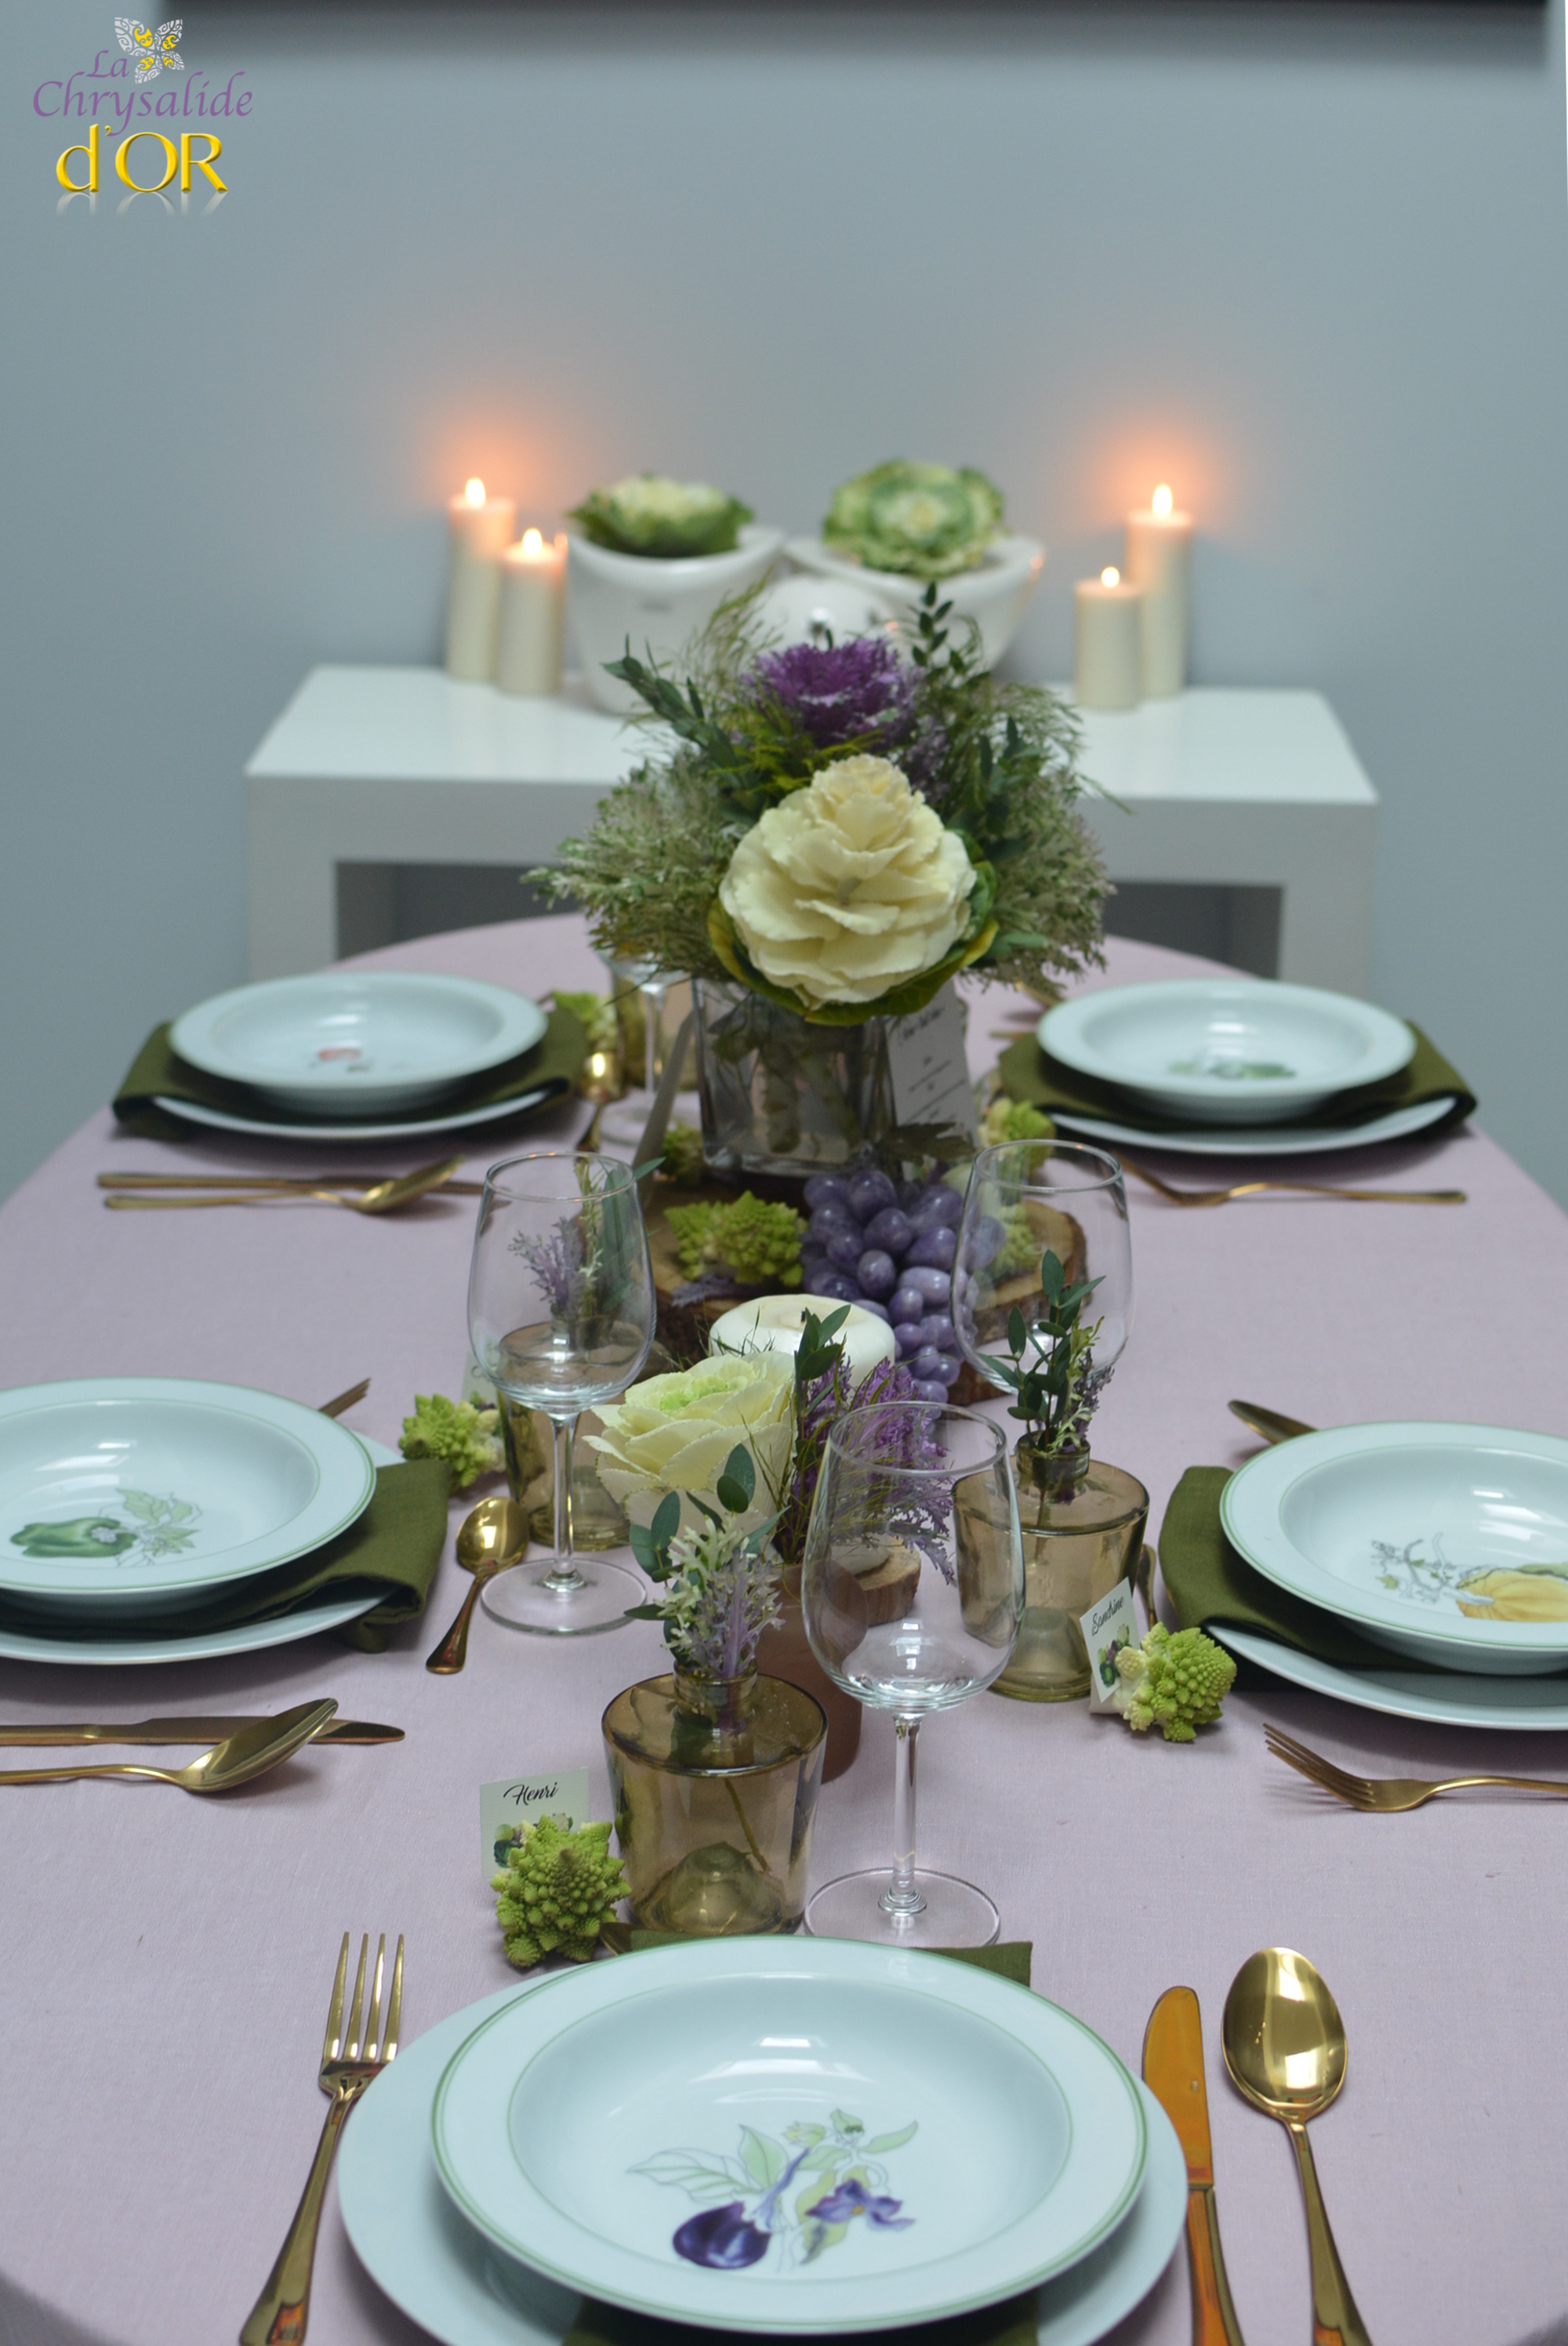 décorer une table mariage avec des choux d'ornement (fleur de choux)